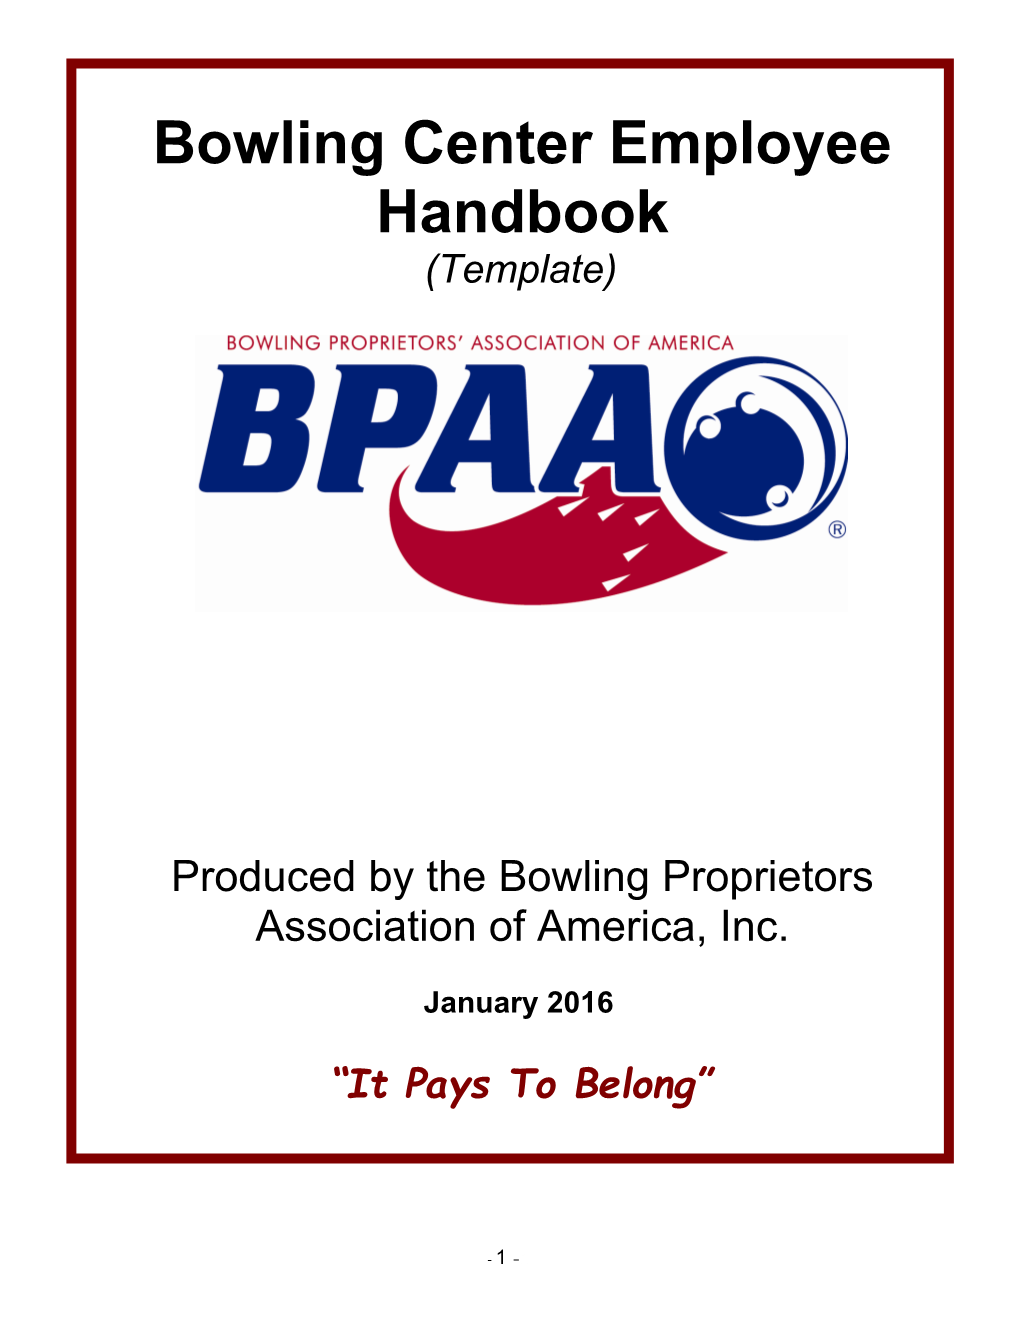 Bowling Center Employee Handbook